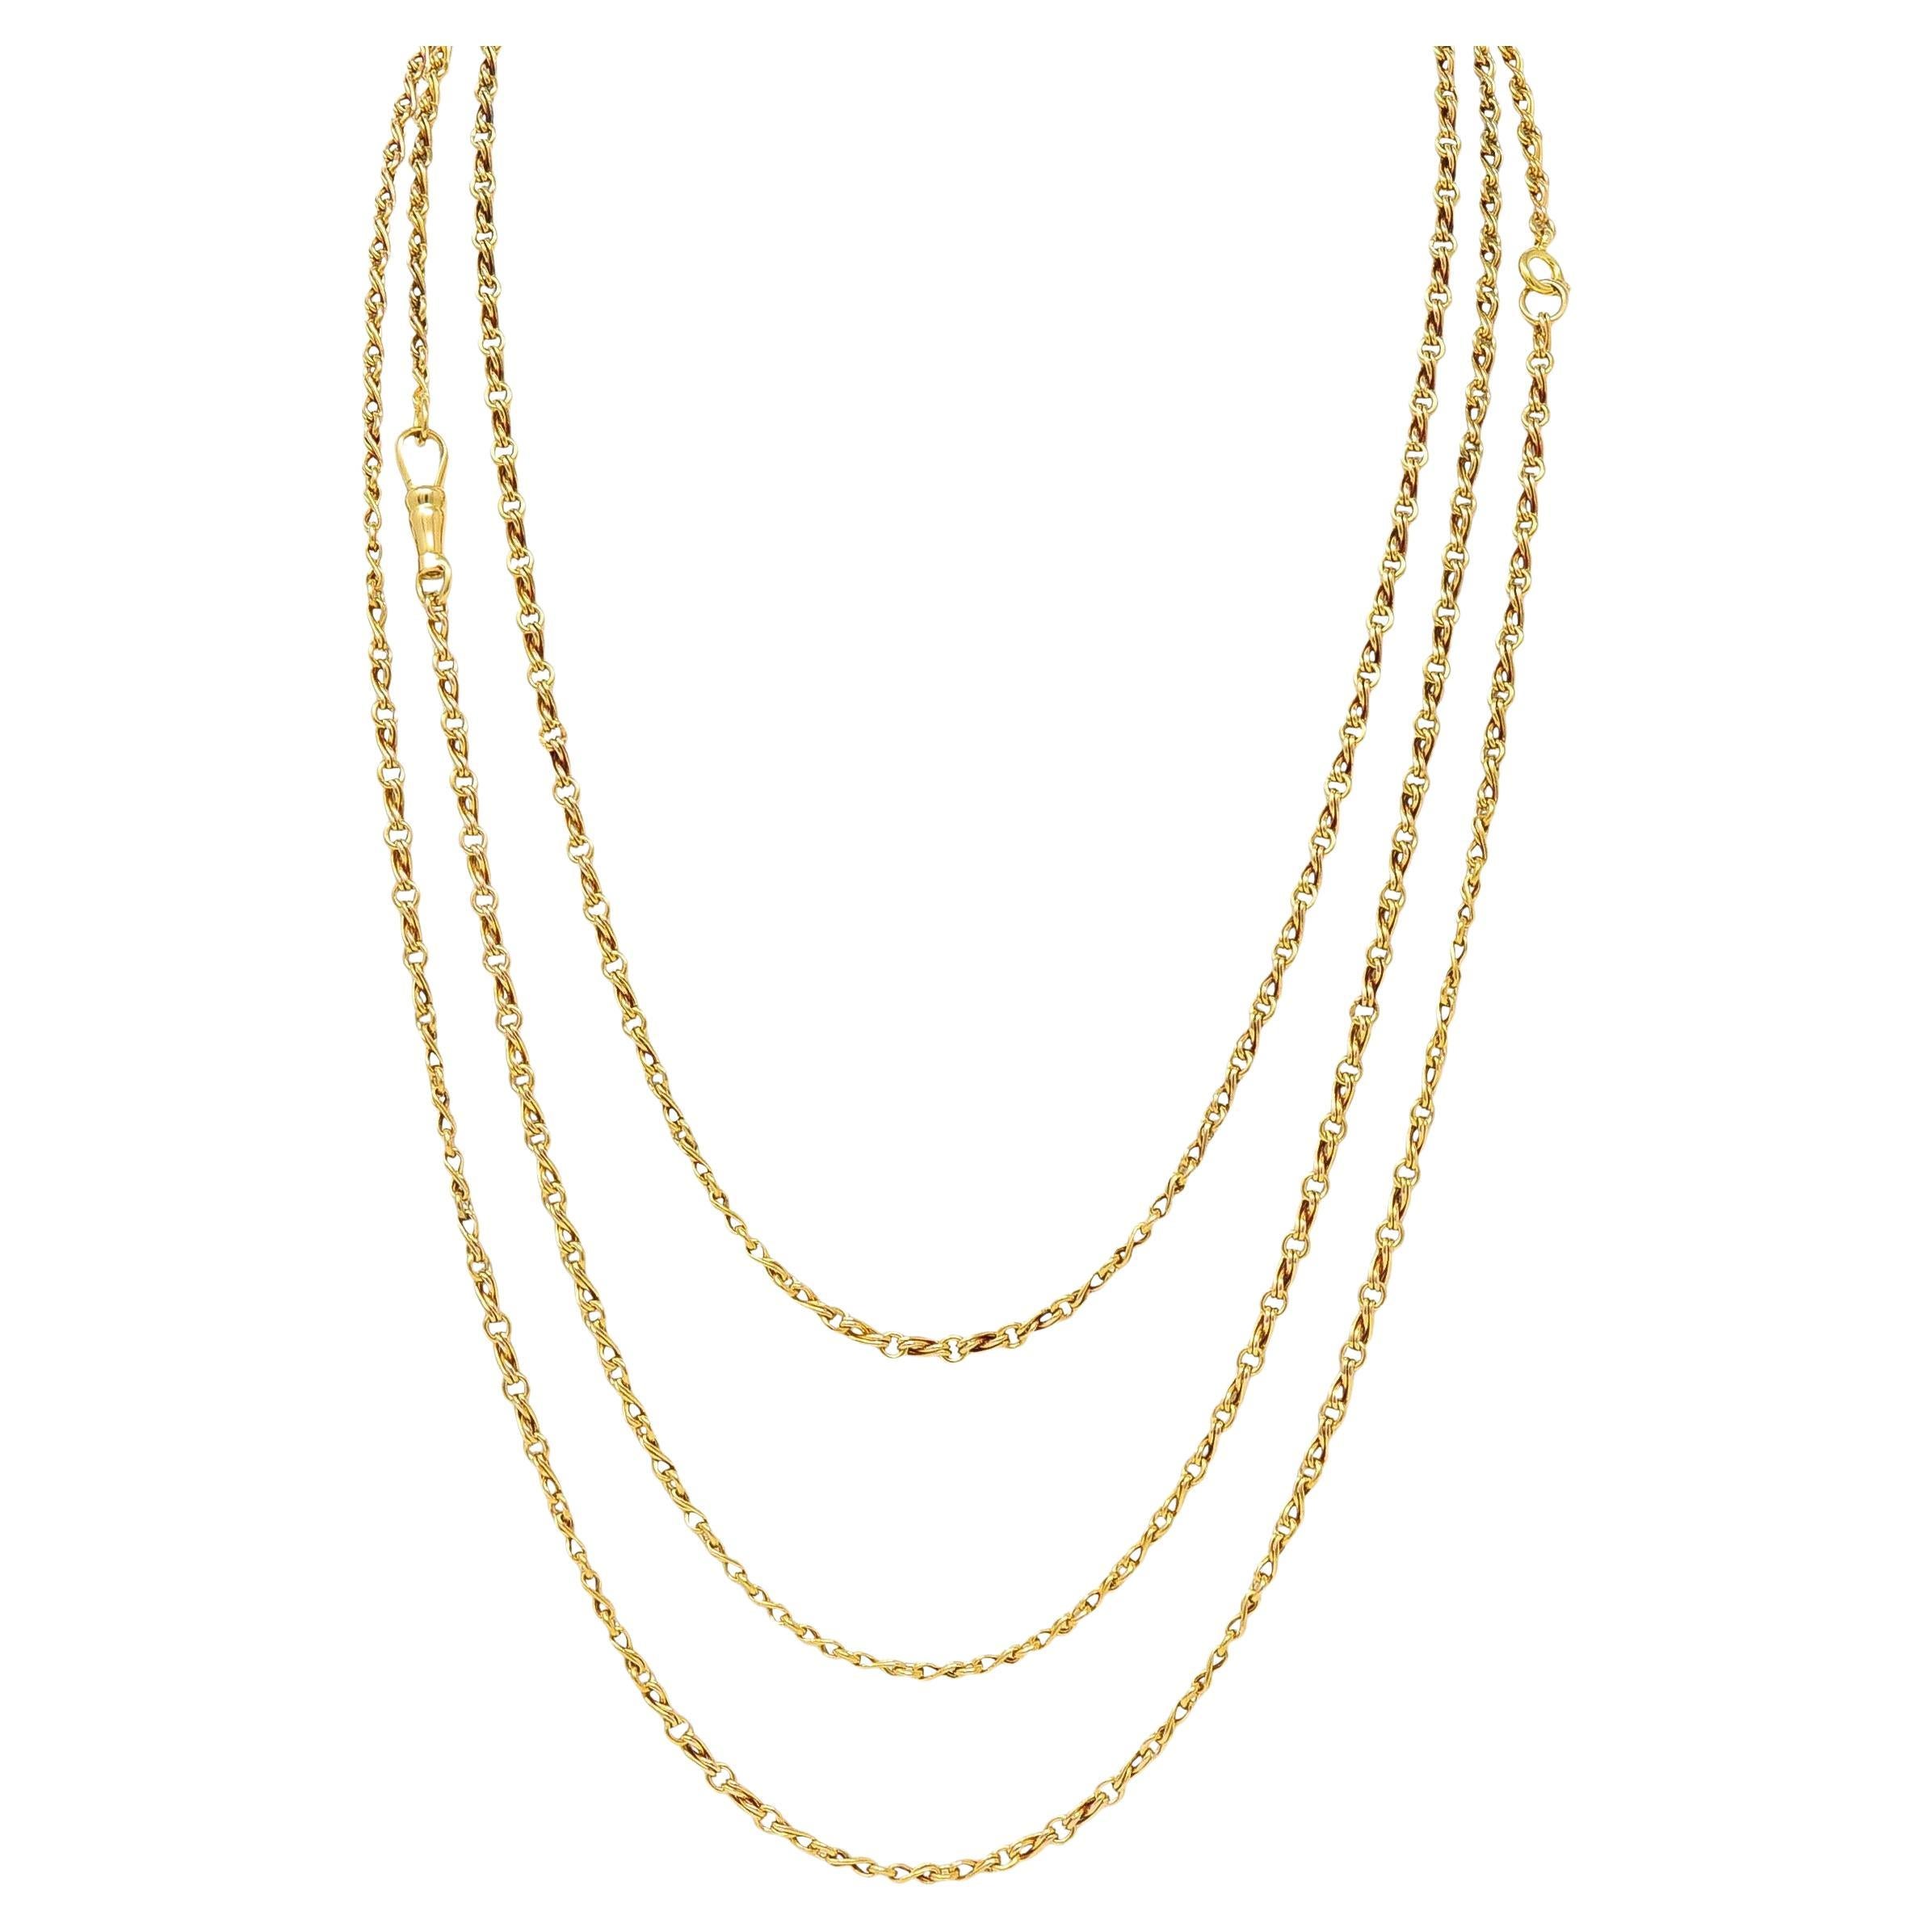 Long collier ancien victorien en or jaune 18 carats à maillons infinis de 66,5 pouces